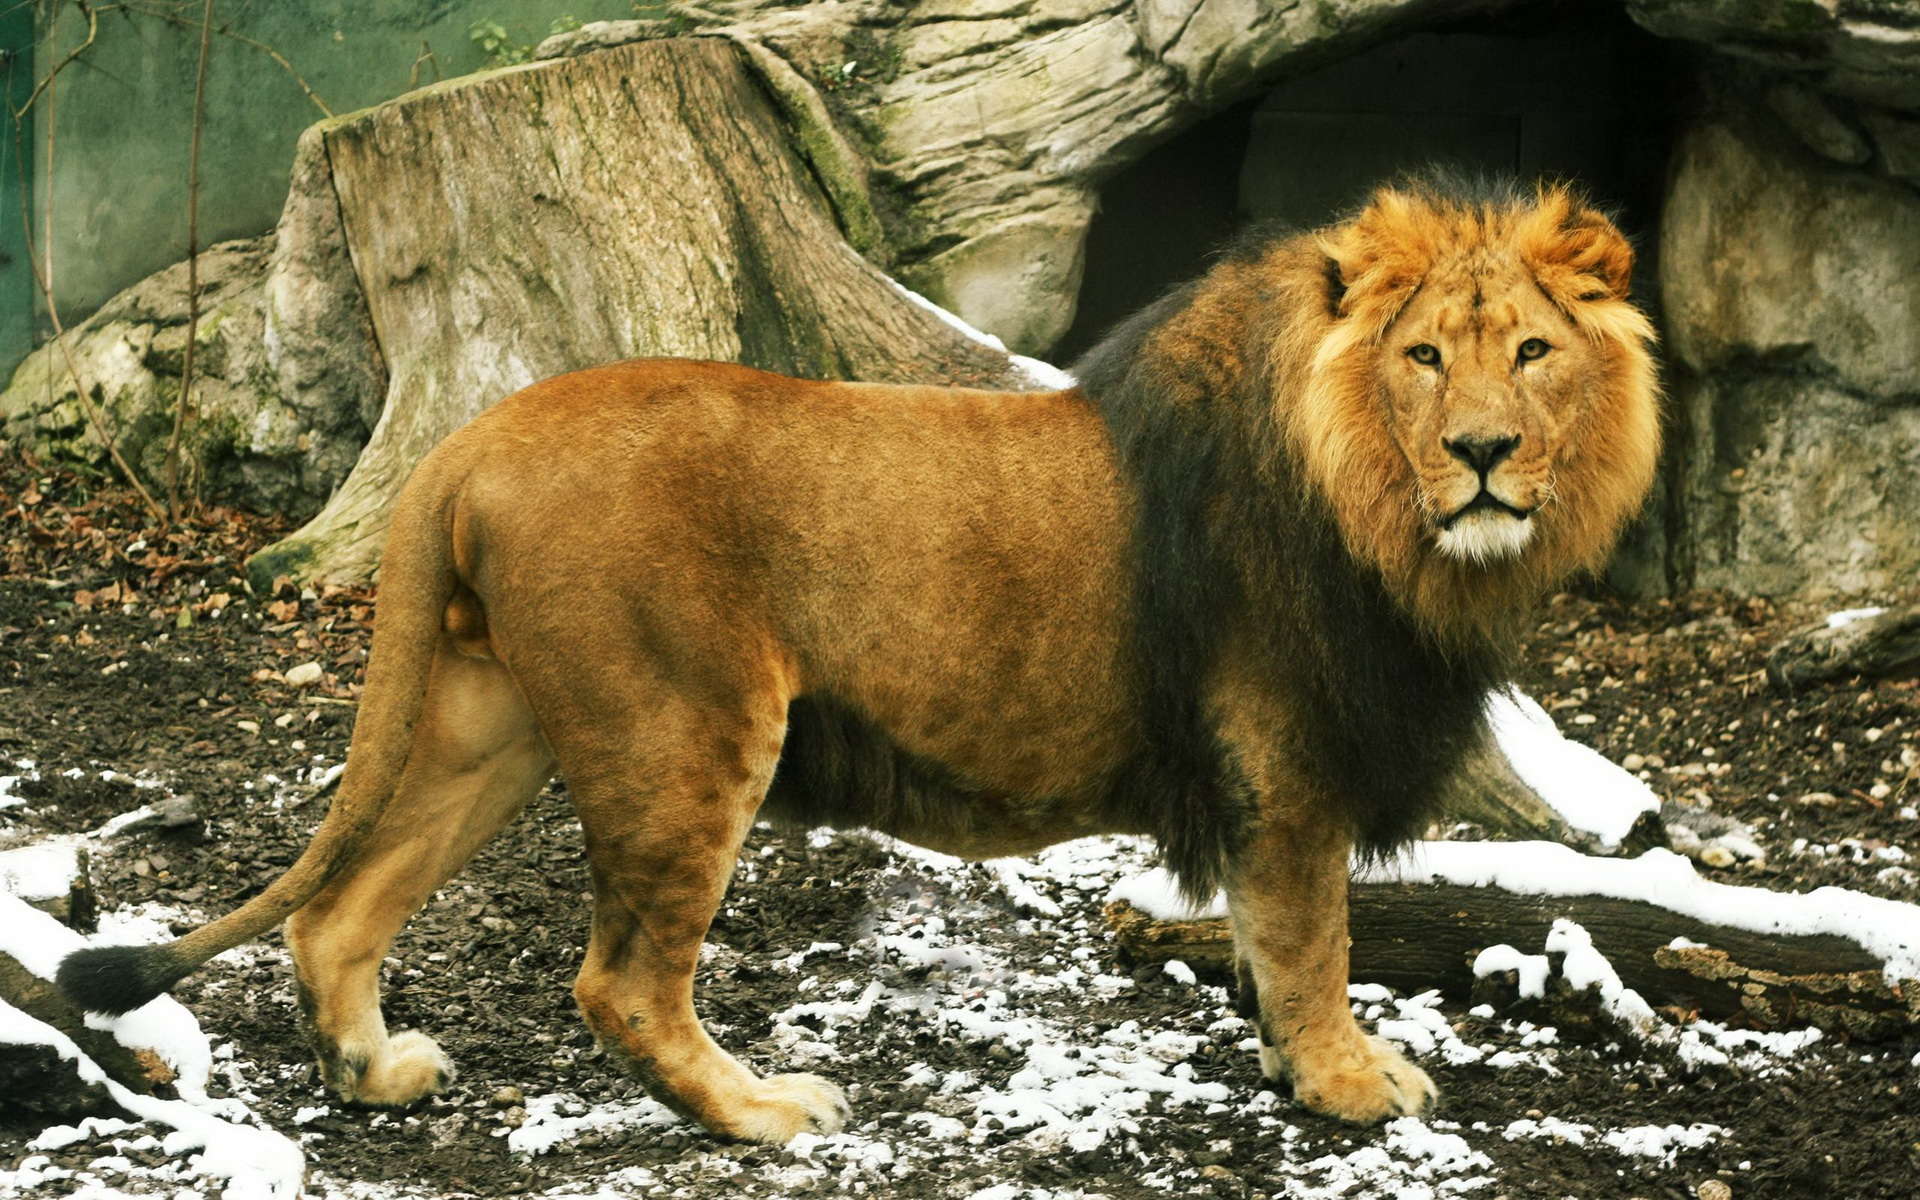 beautiful lion